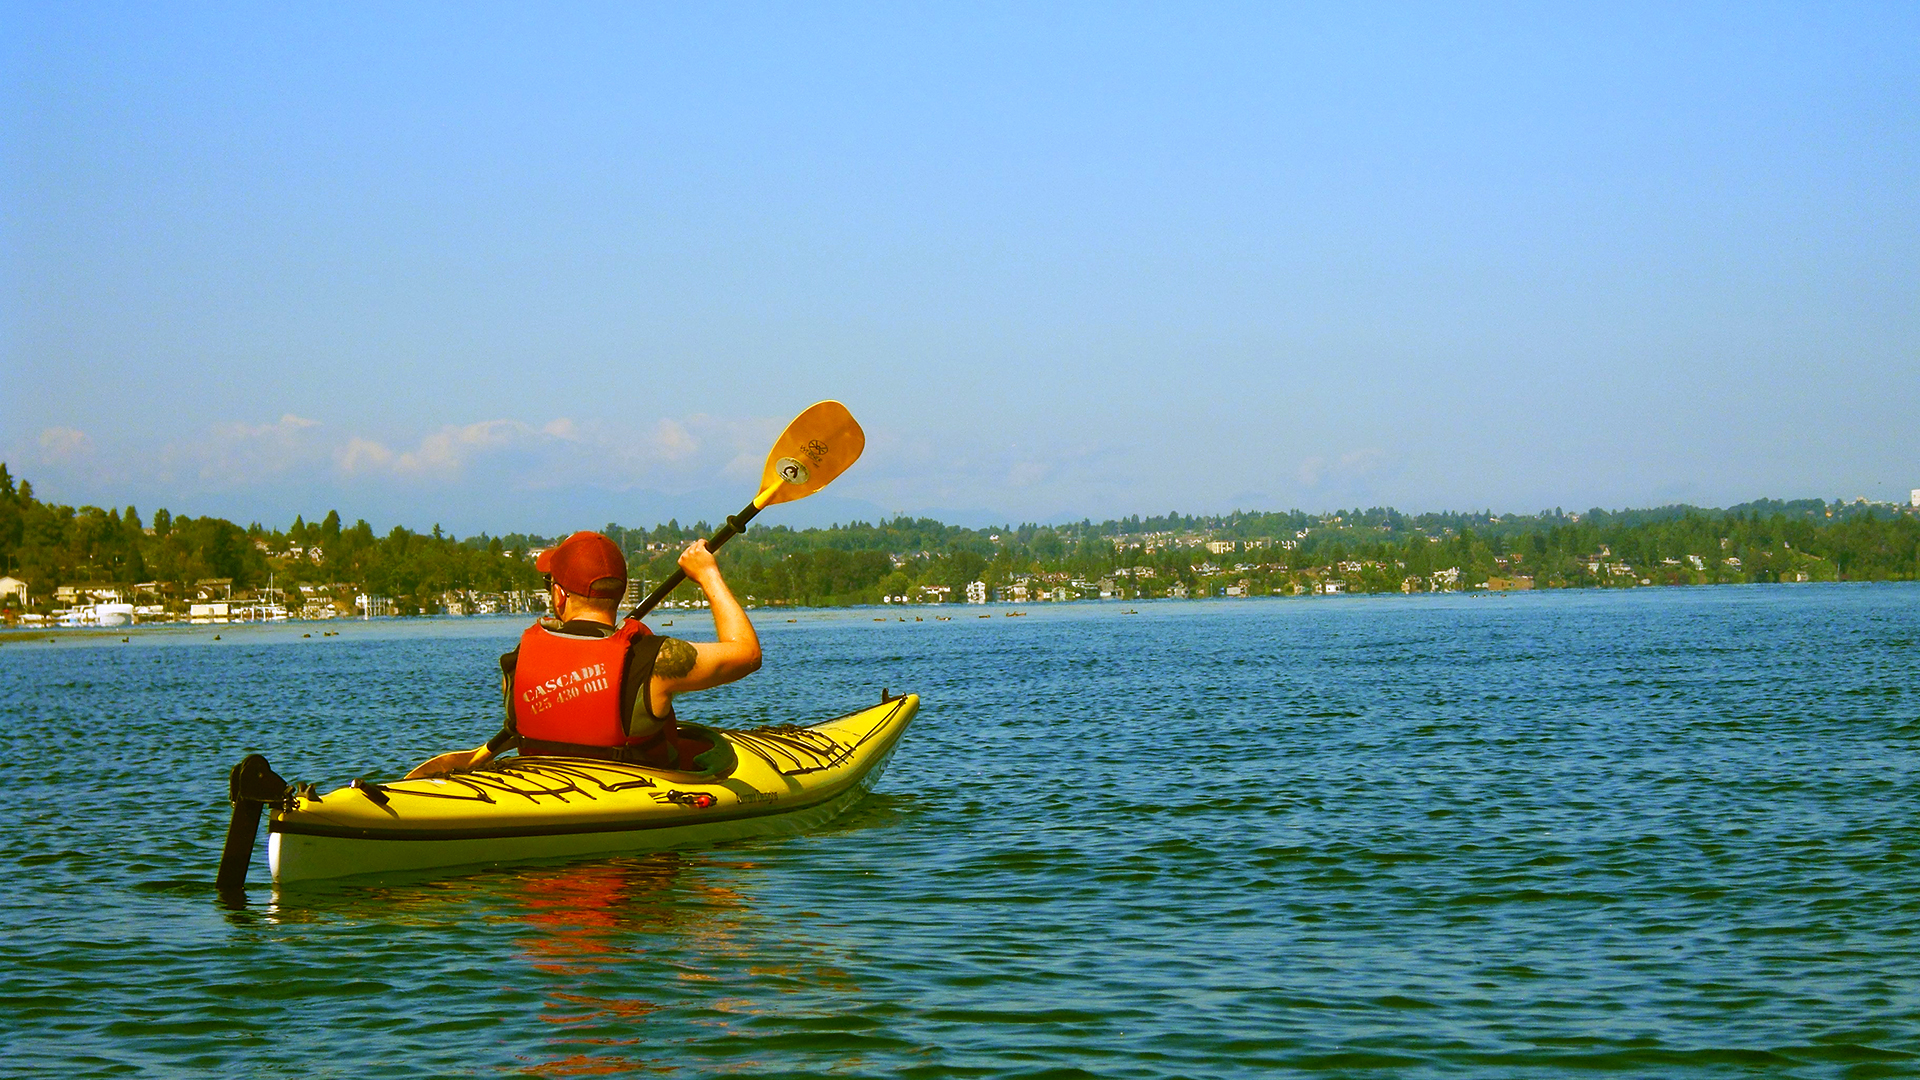 Canoer Paddling On A Lake Image Free Stock Photo Public Domain